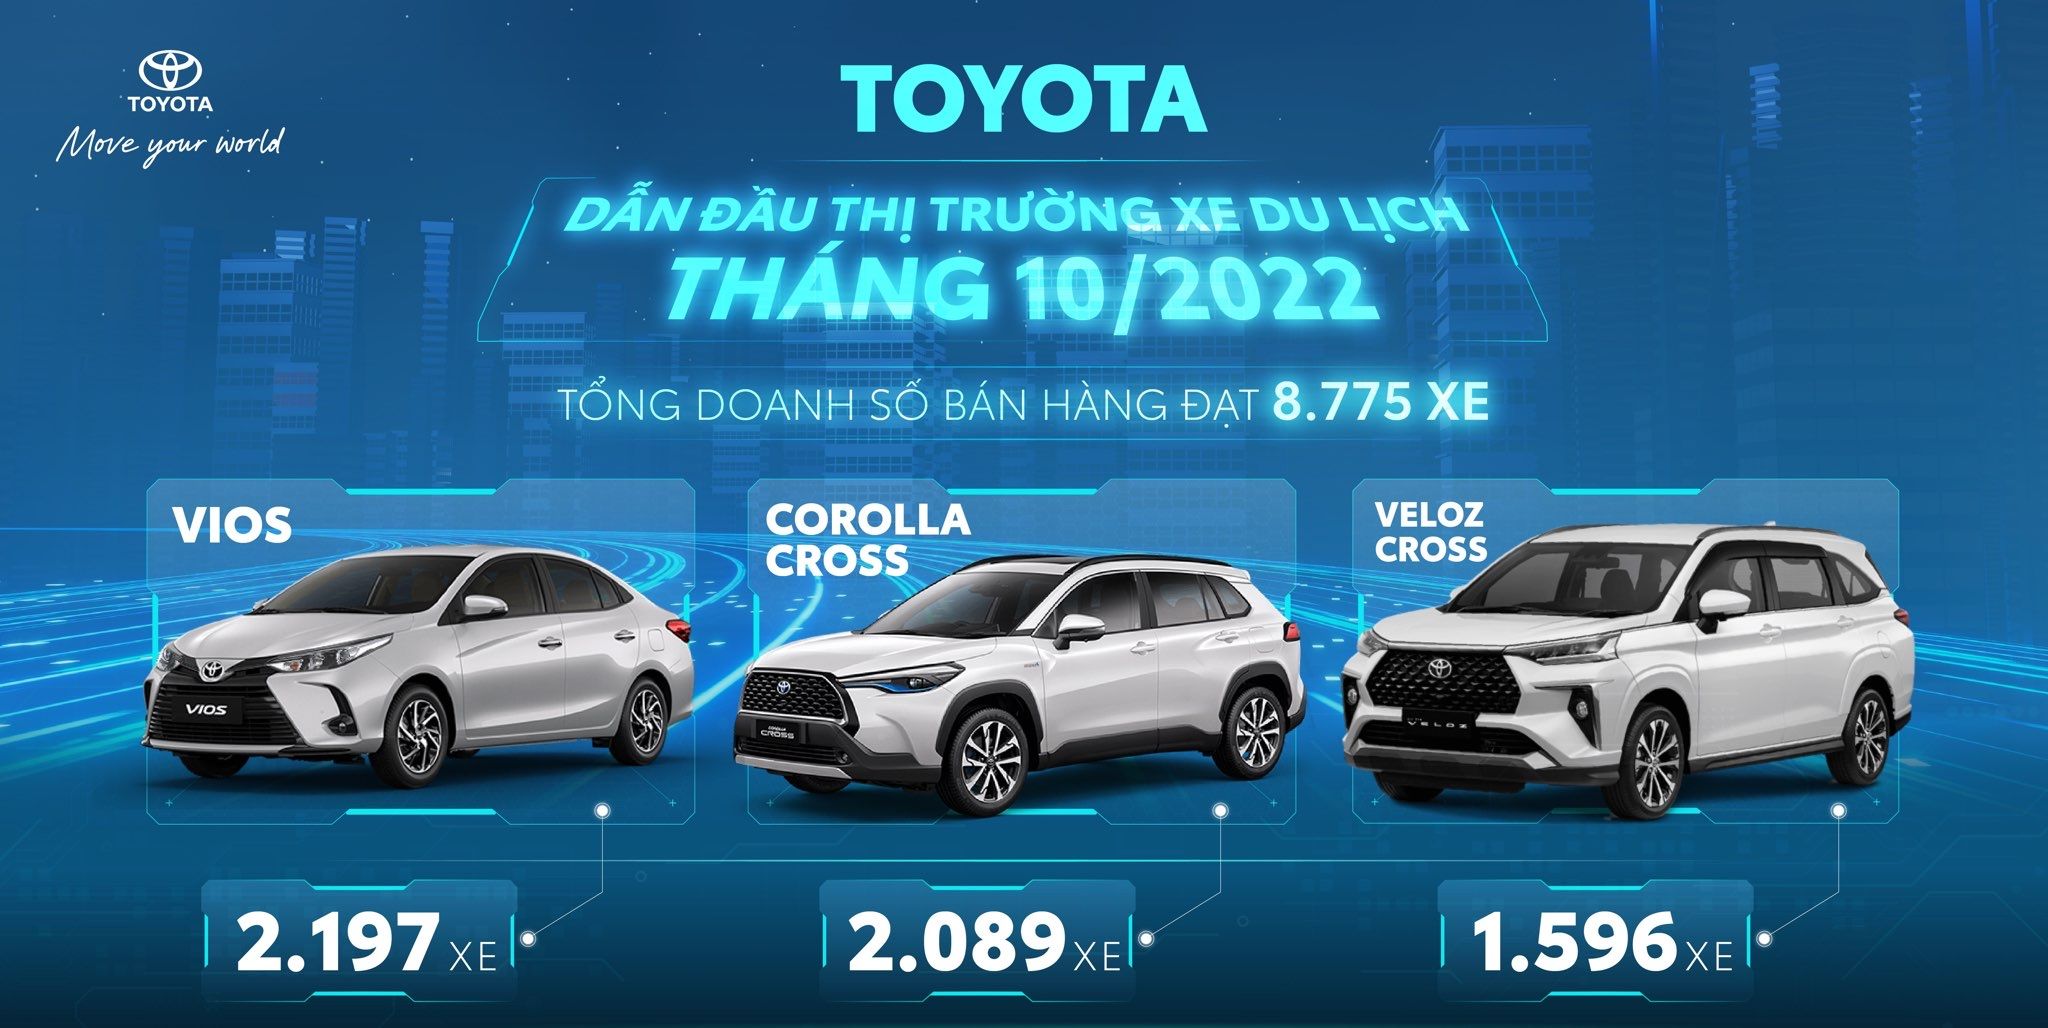 Toyota Việt Nam công bố doanh số bán hàng tháng 10/2022